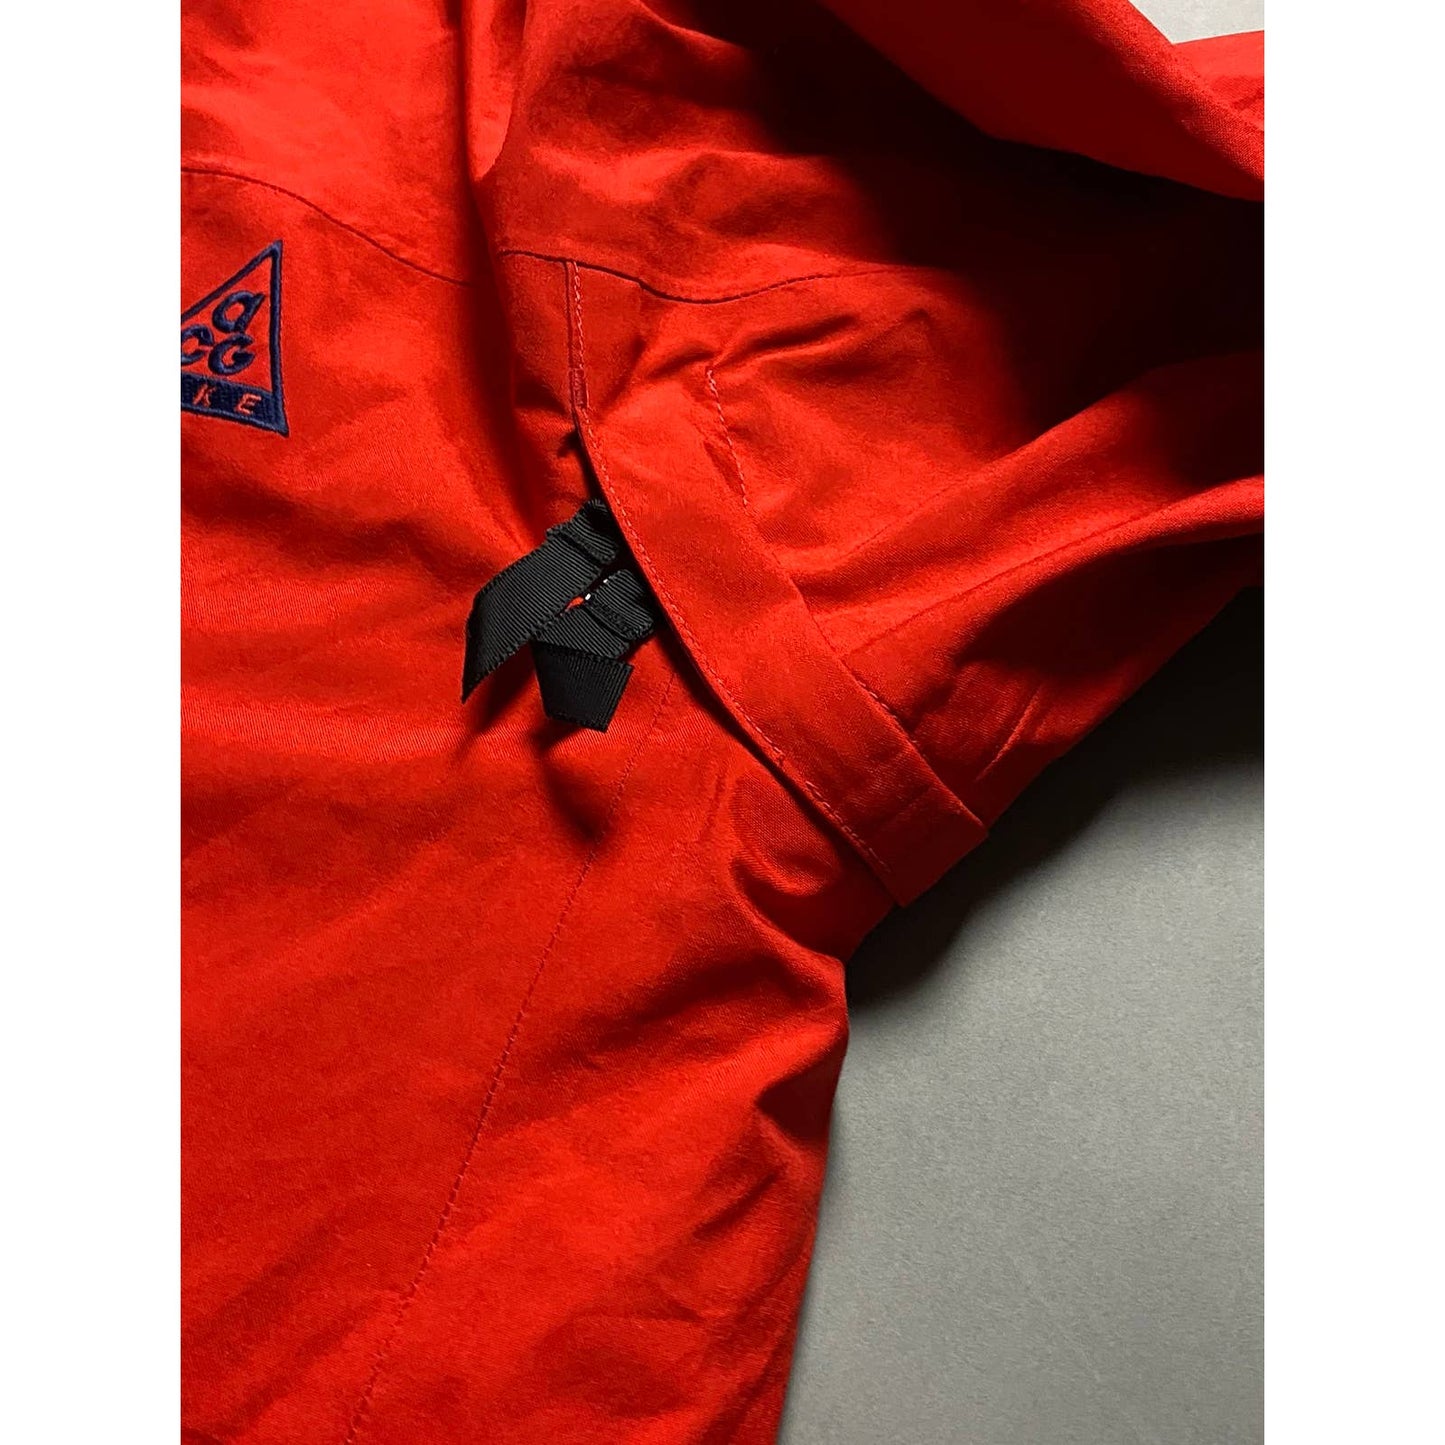 Nike ACG jacket vintage red 2000s windbreaker